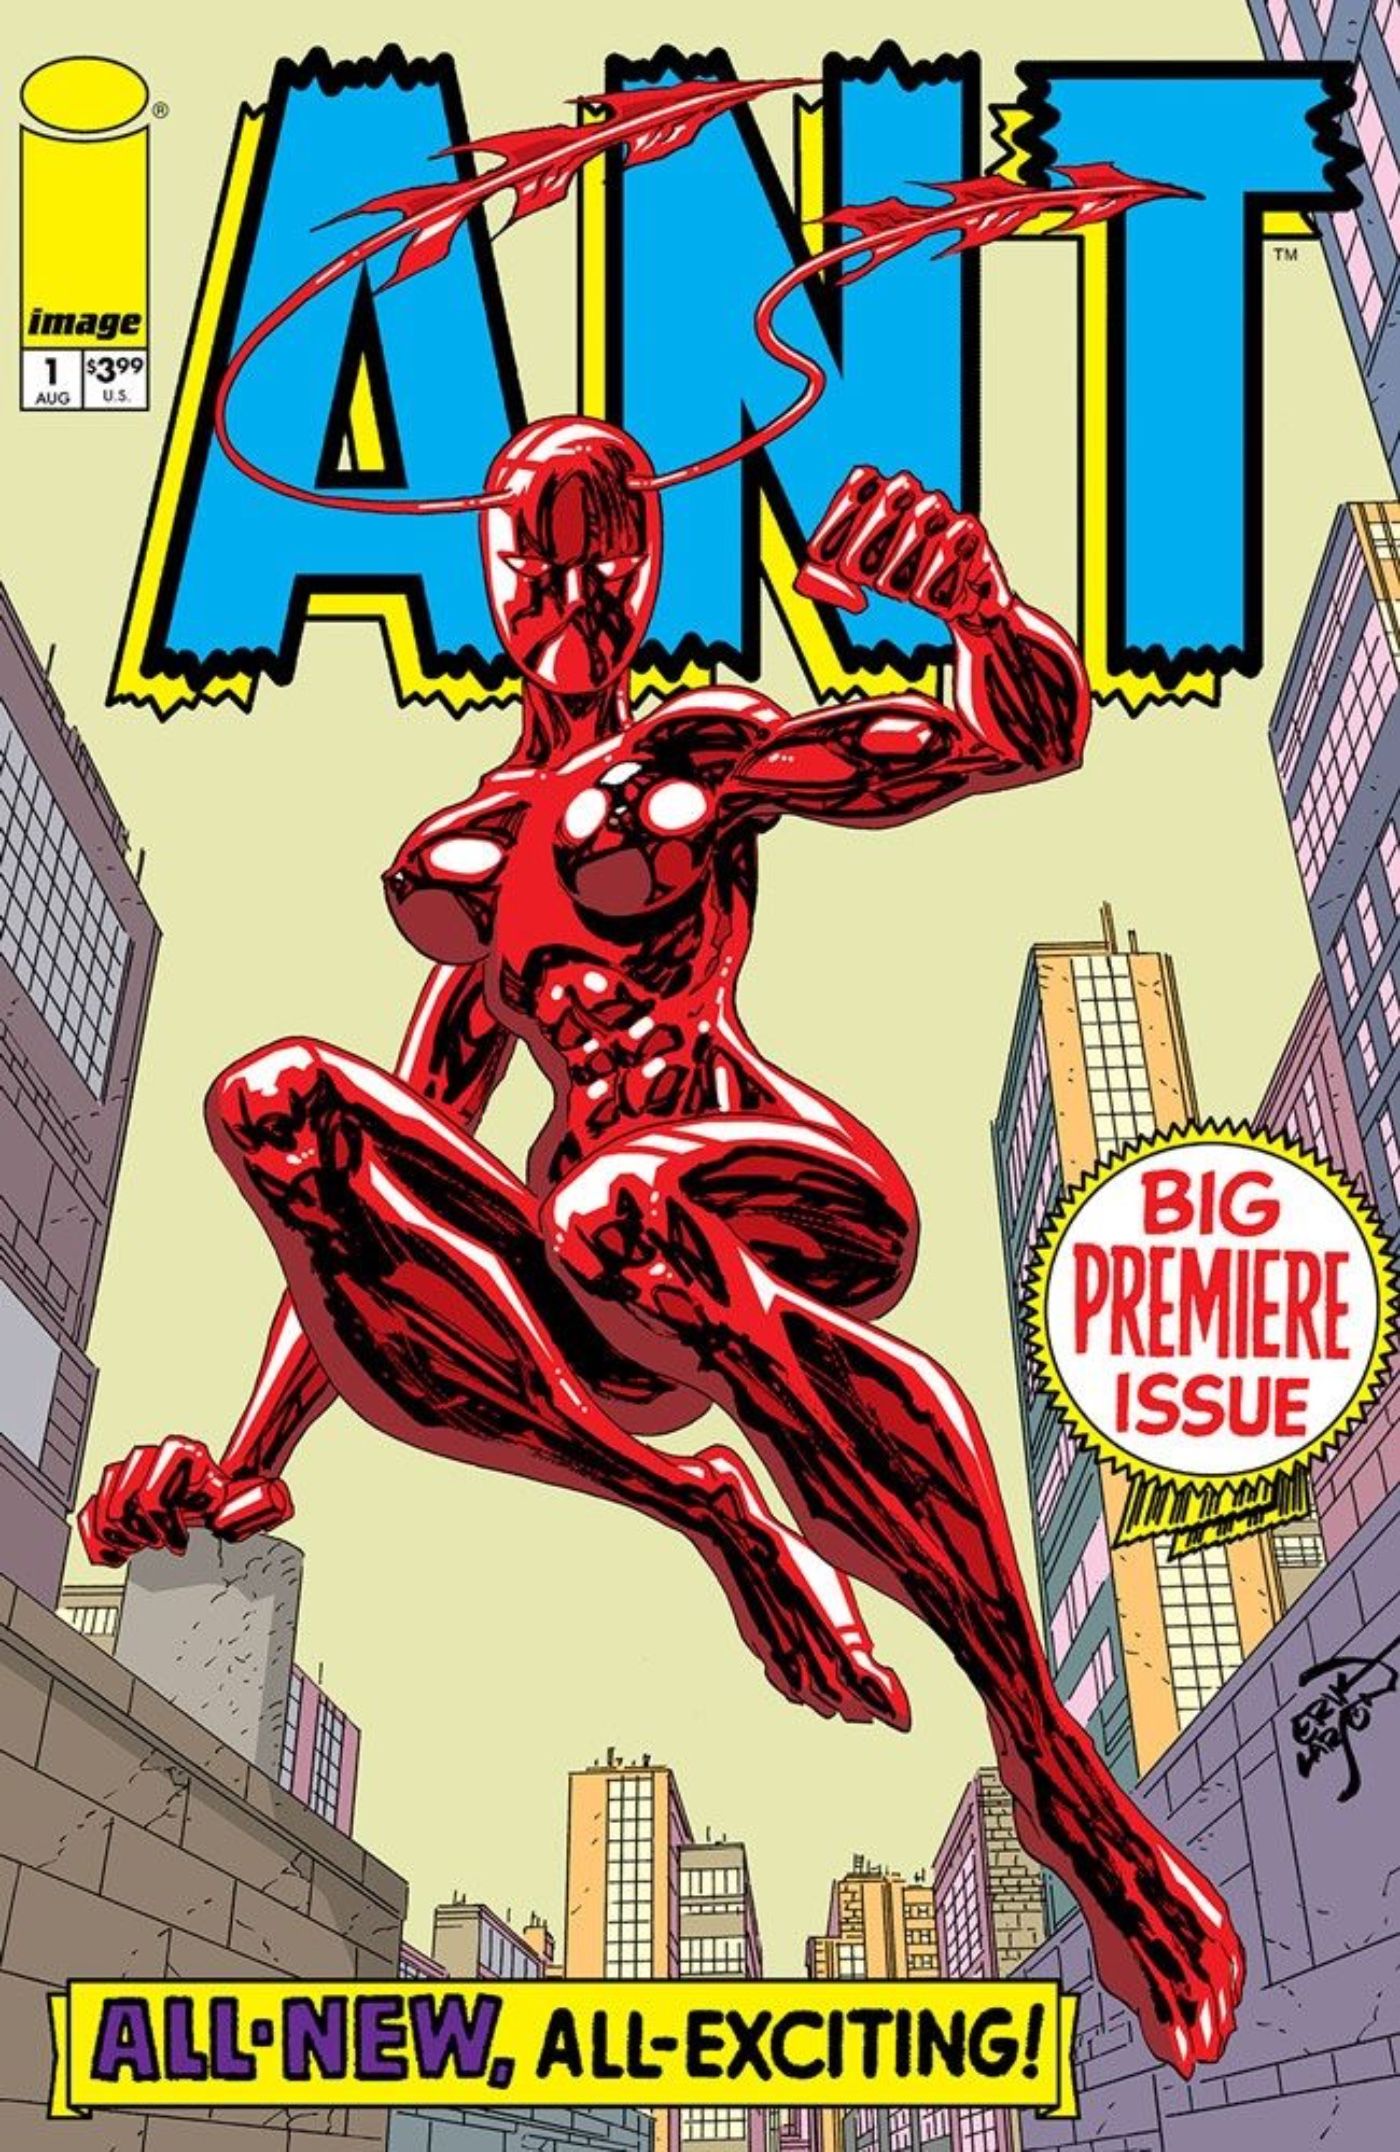 Ant, Image Comics